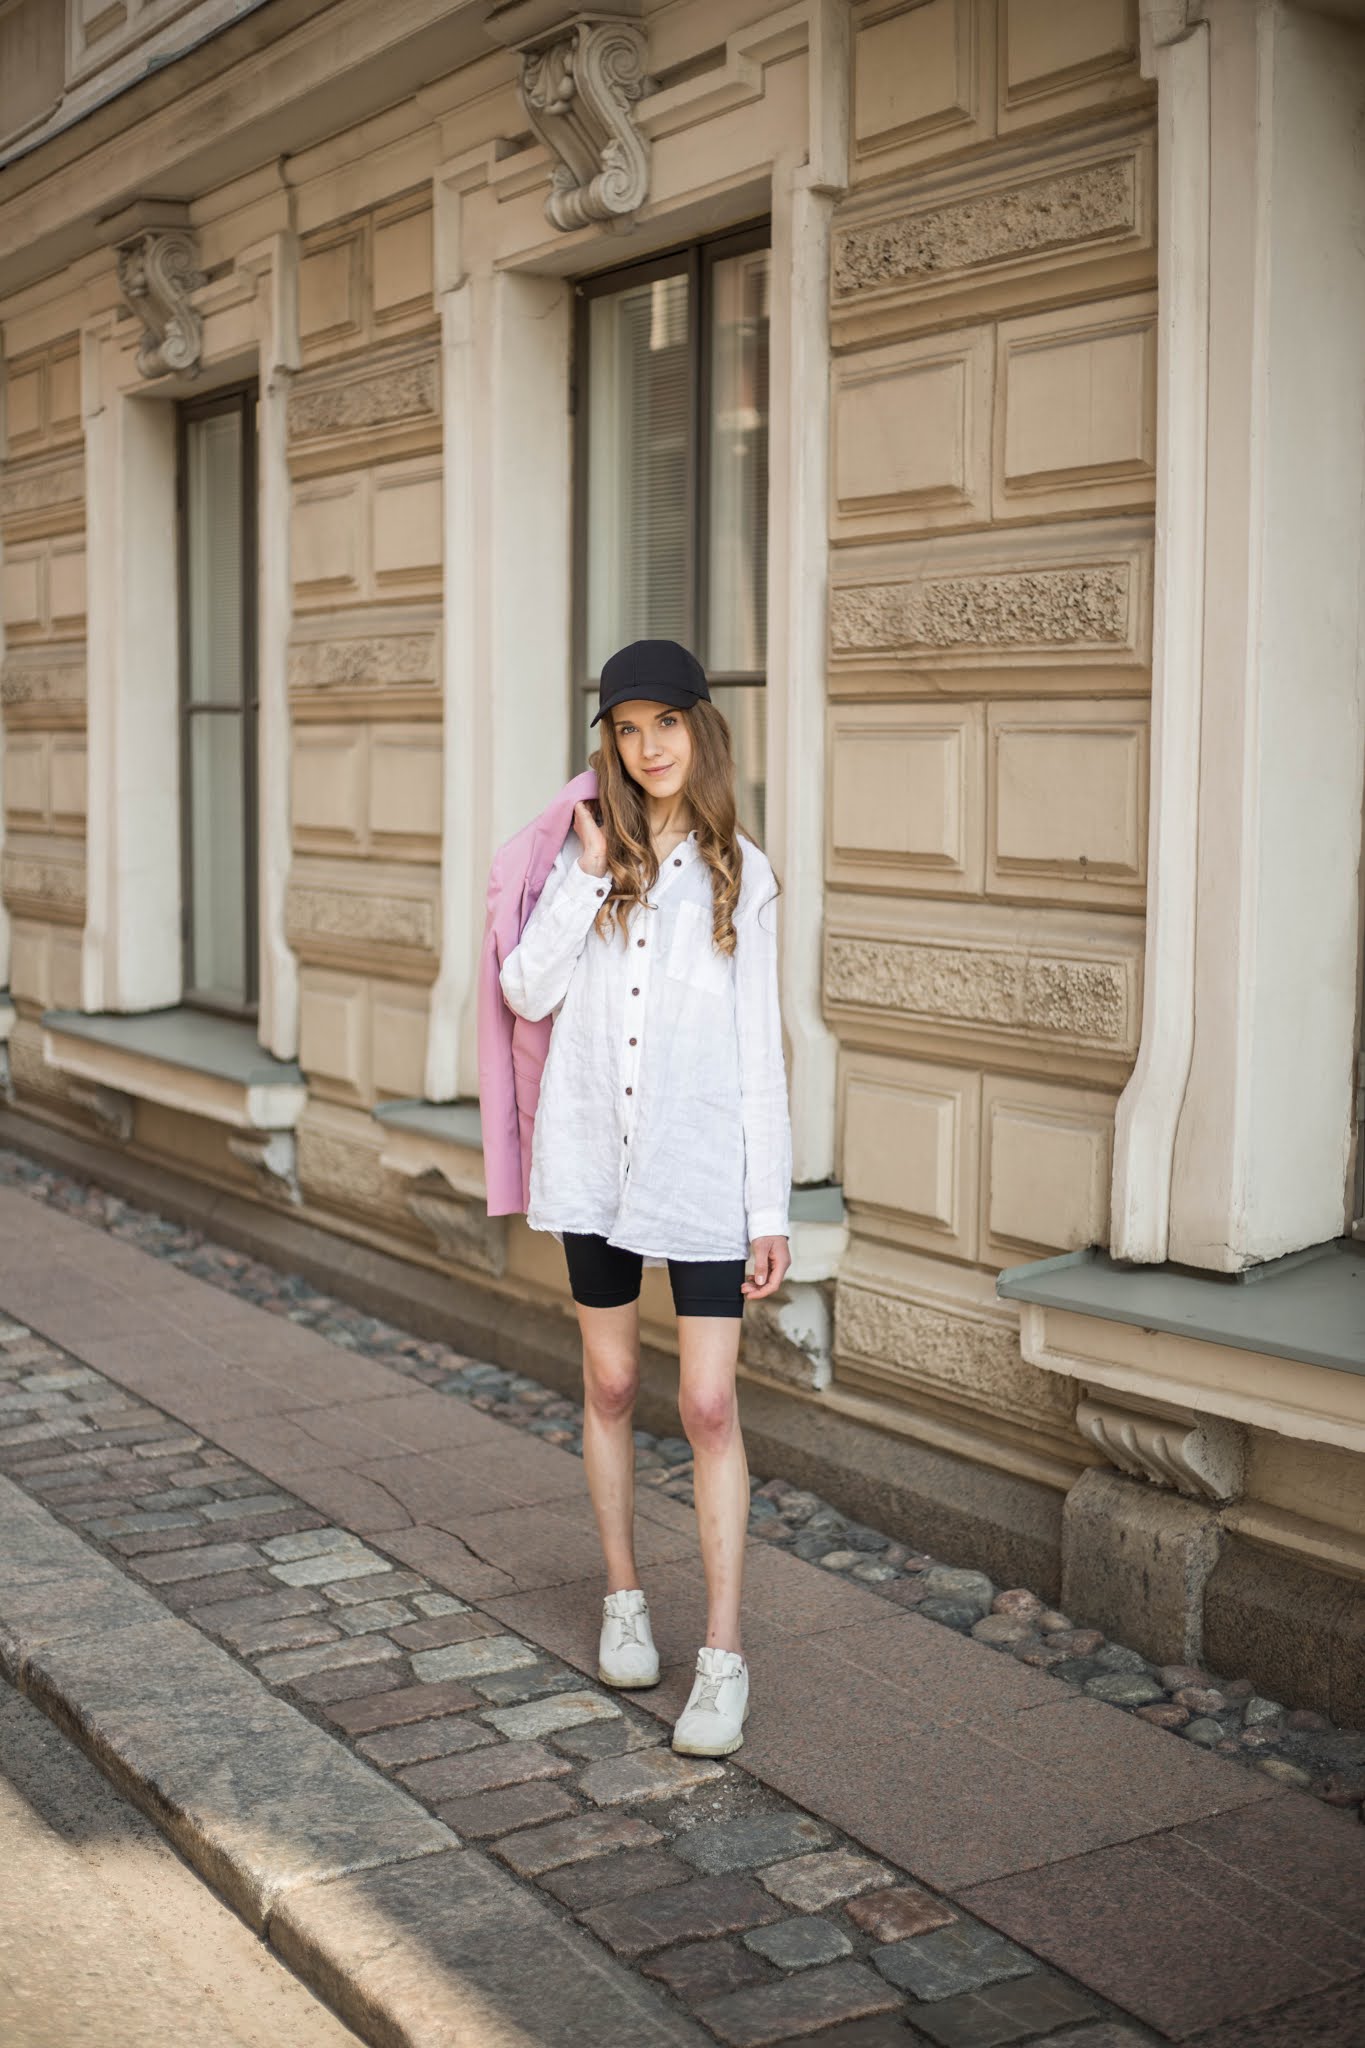 Kesän tyylivinkit: sporttisuus ja vaaleanpunainen bleiseri // Summer style tips: sporty outfit and pink blazer